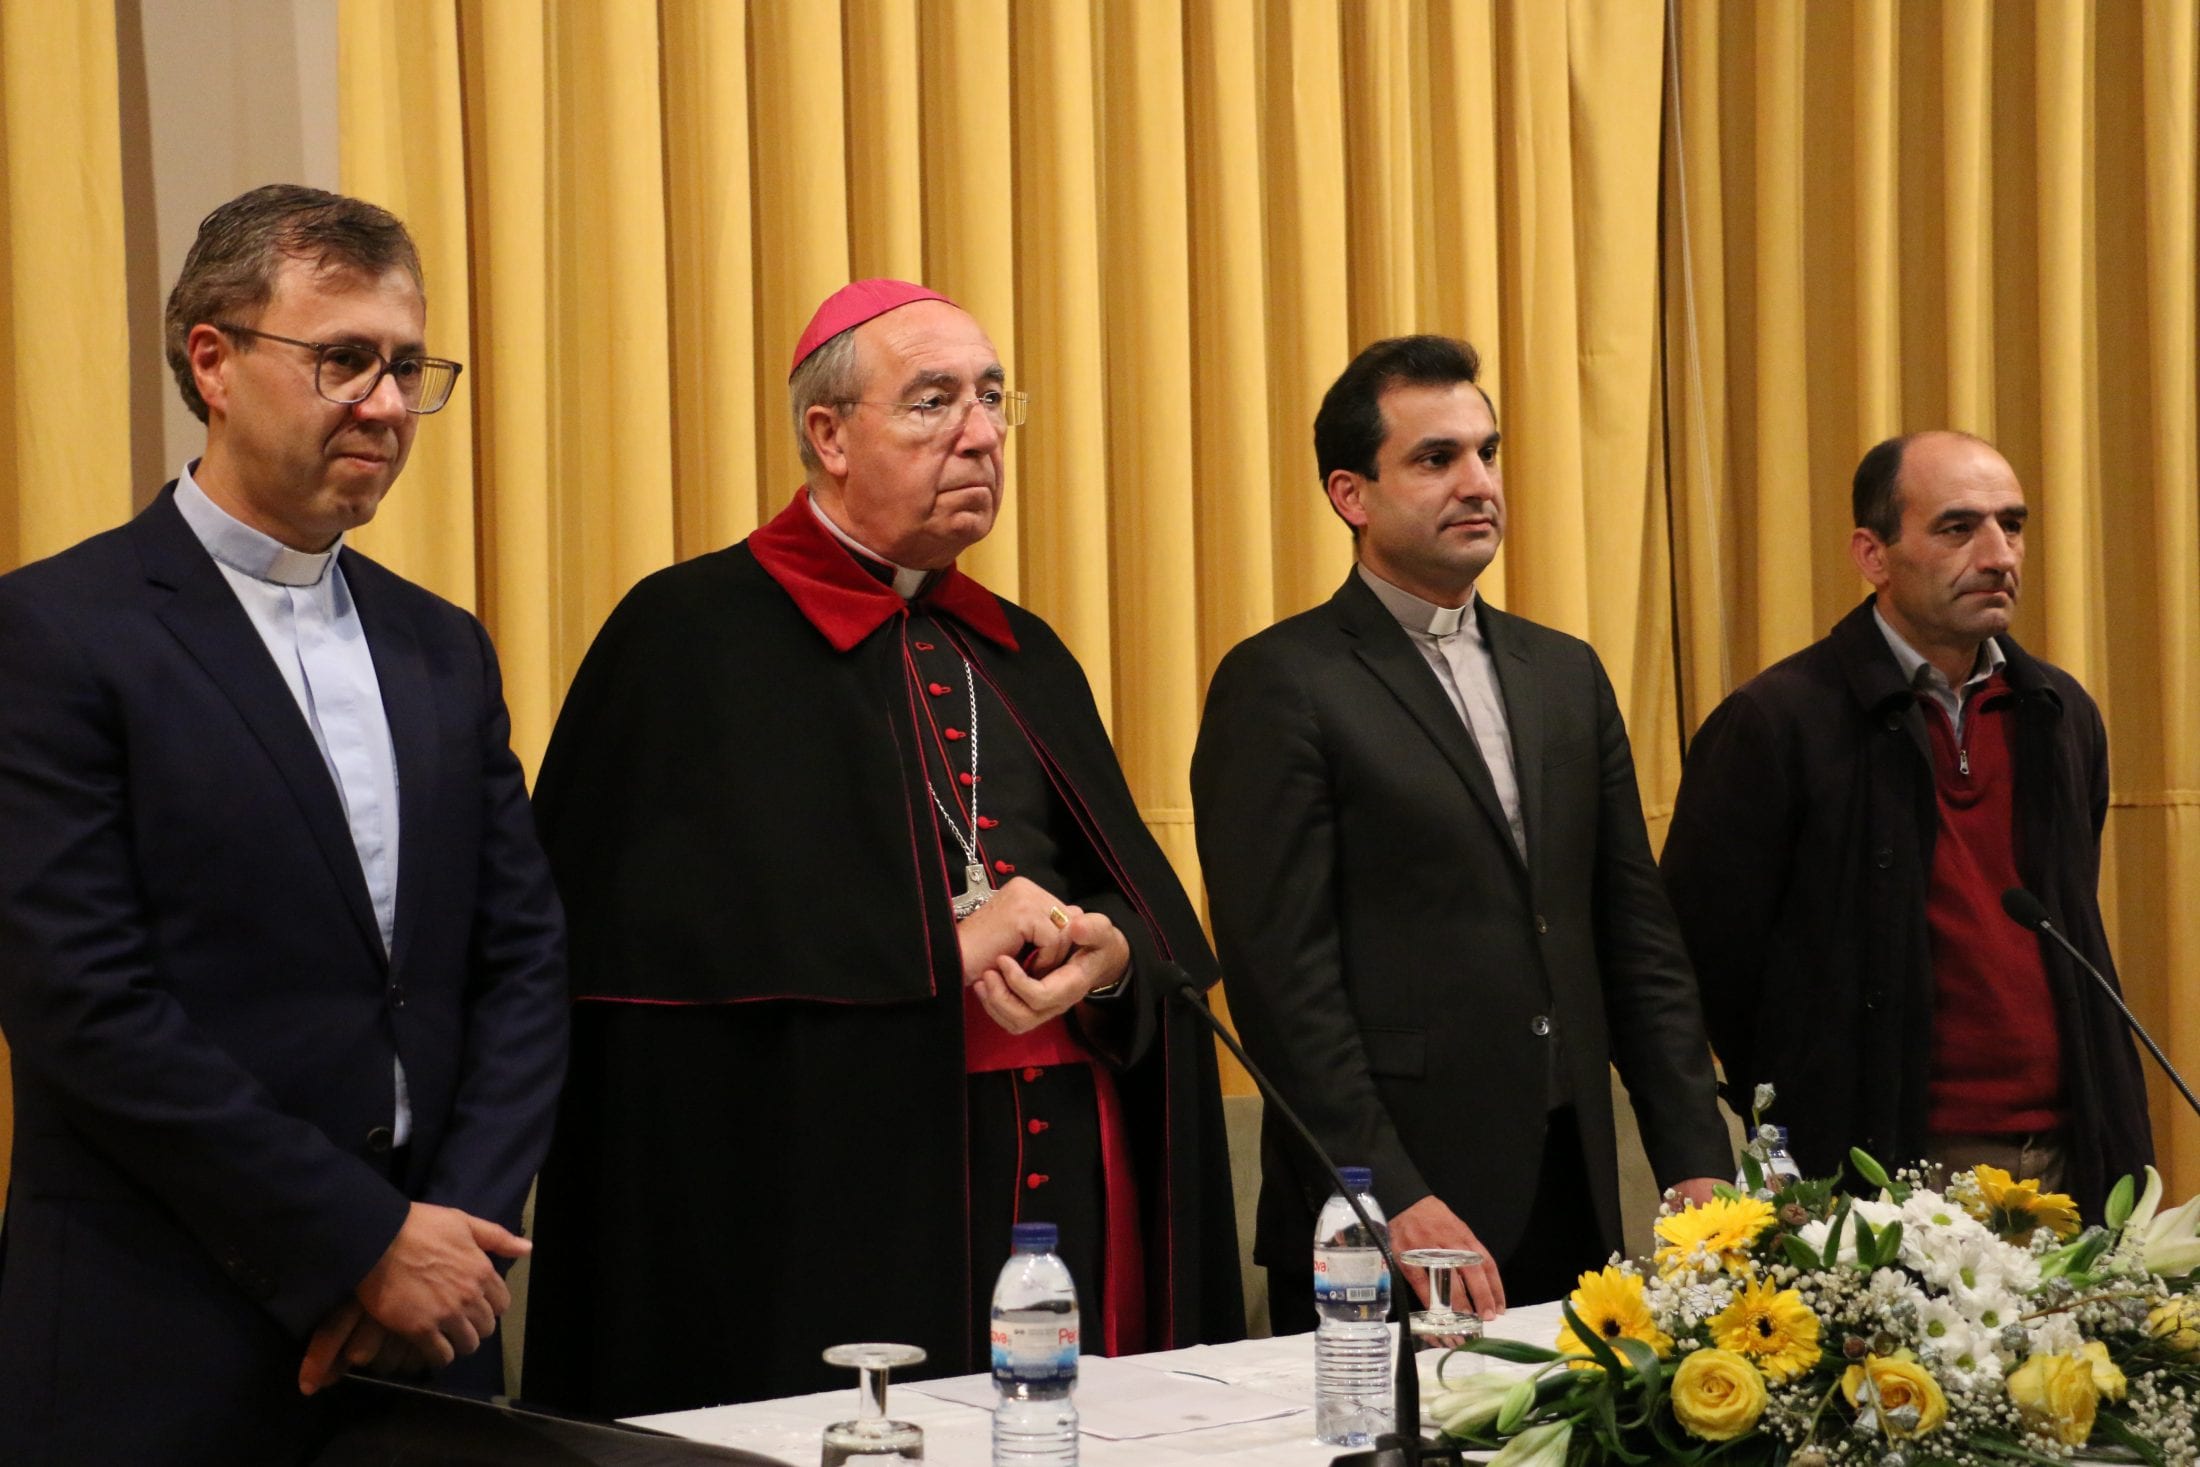 D. Jorge Ortiga quer clero preocupado com os pobres